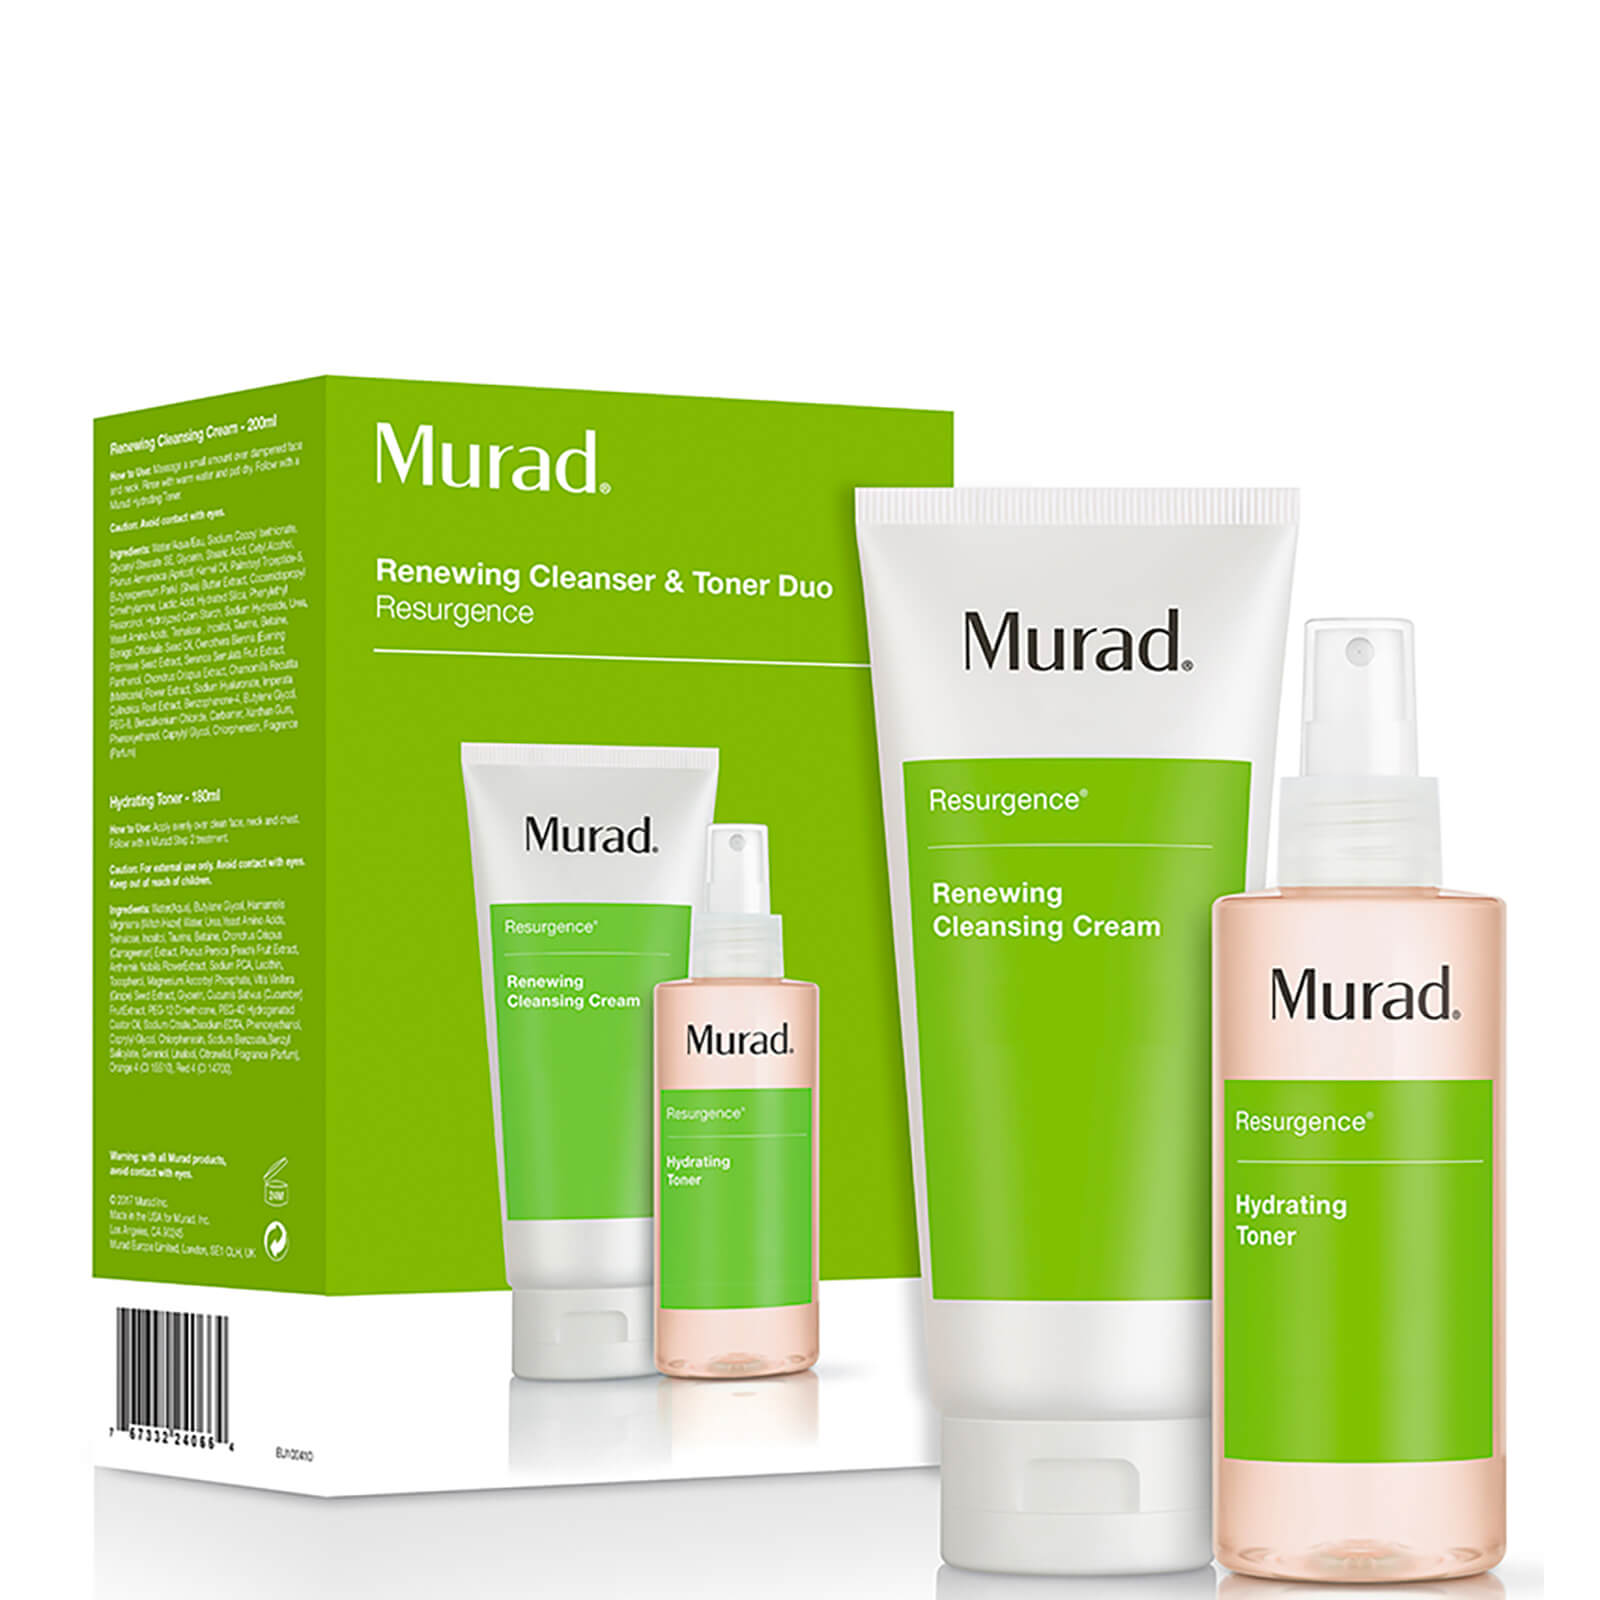 Crema limpiadora y tónico hidratante Renewing Cleansing Cream and Hydrating Toner Duo de Murad (valor 50 £)